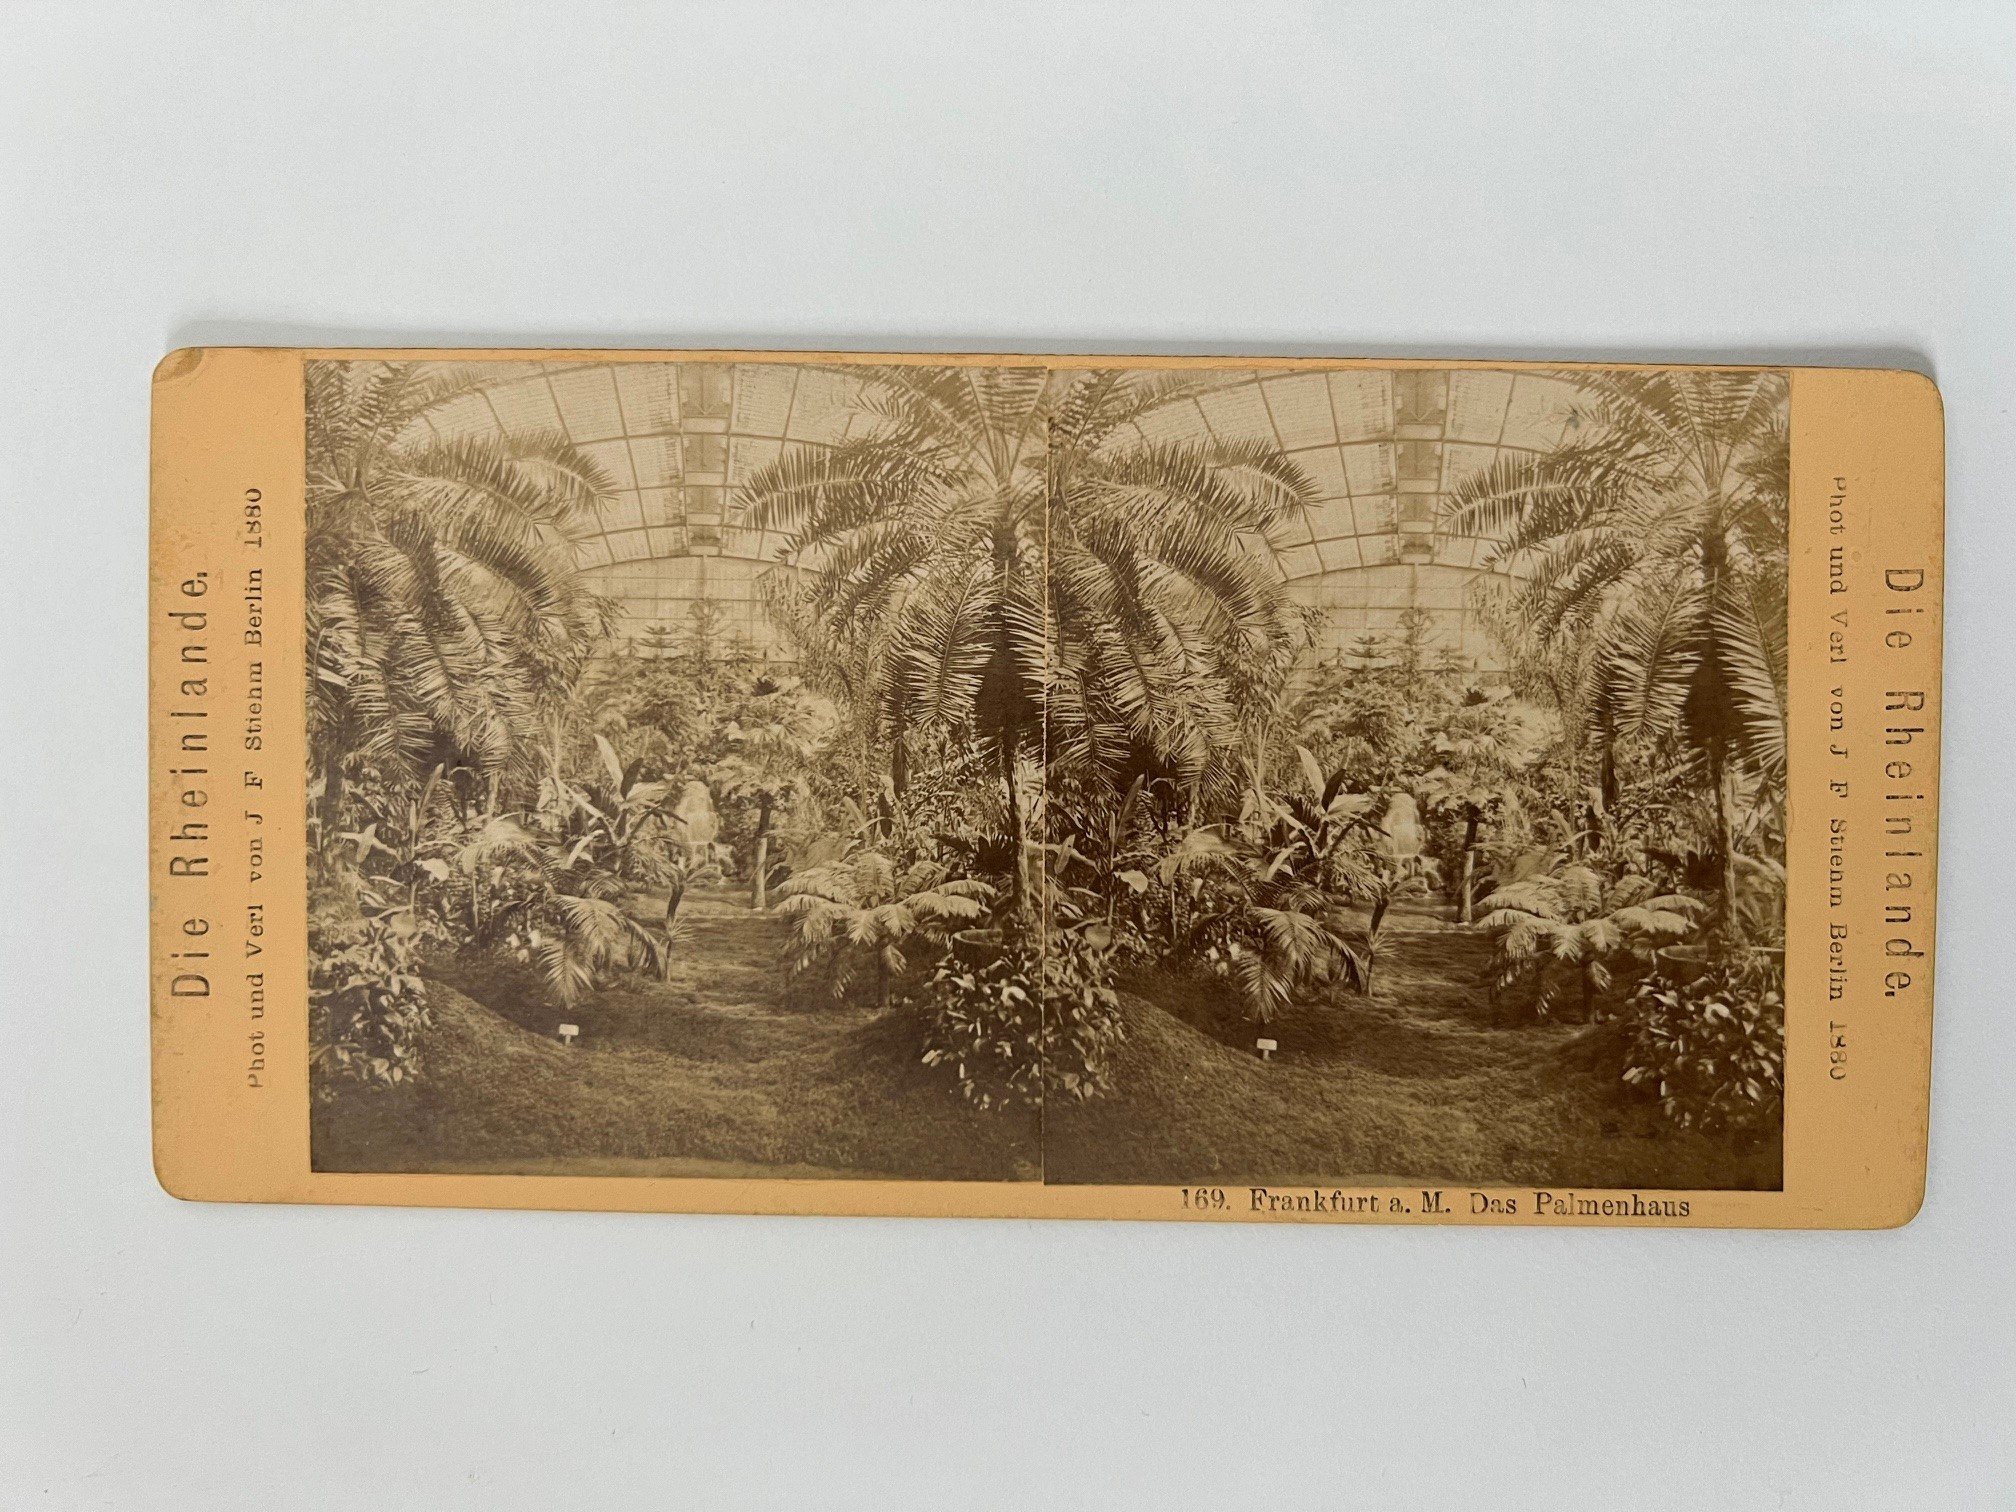 Stereobild, Johann Friedrich Stiehm, Frankfurt, 169, Das Palmenhaus, 1880. (Taunus-Rhein-Main - Regionalgeschichtliche Sammlung Dr. Stefan Naas CC BY-NC-SA)